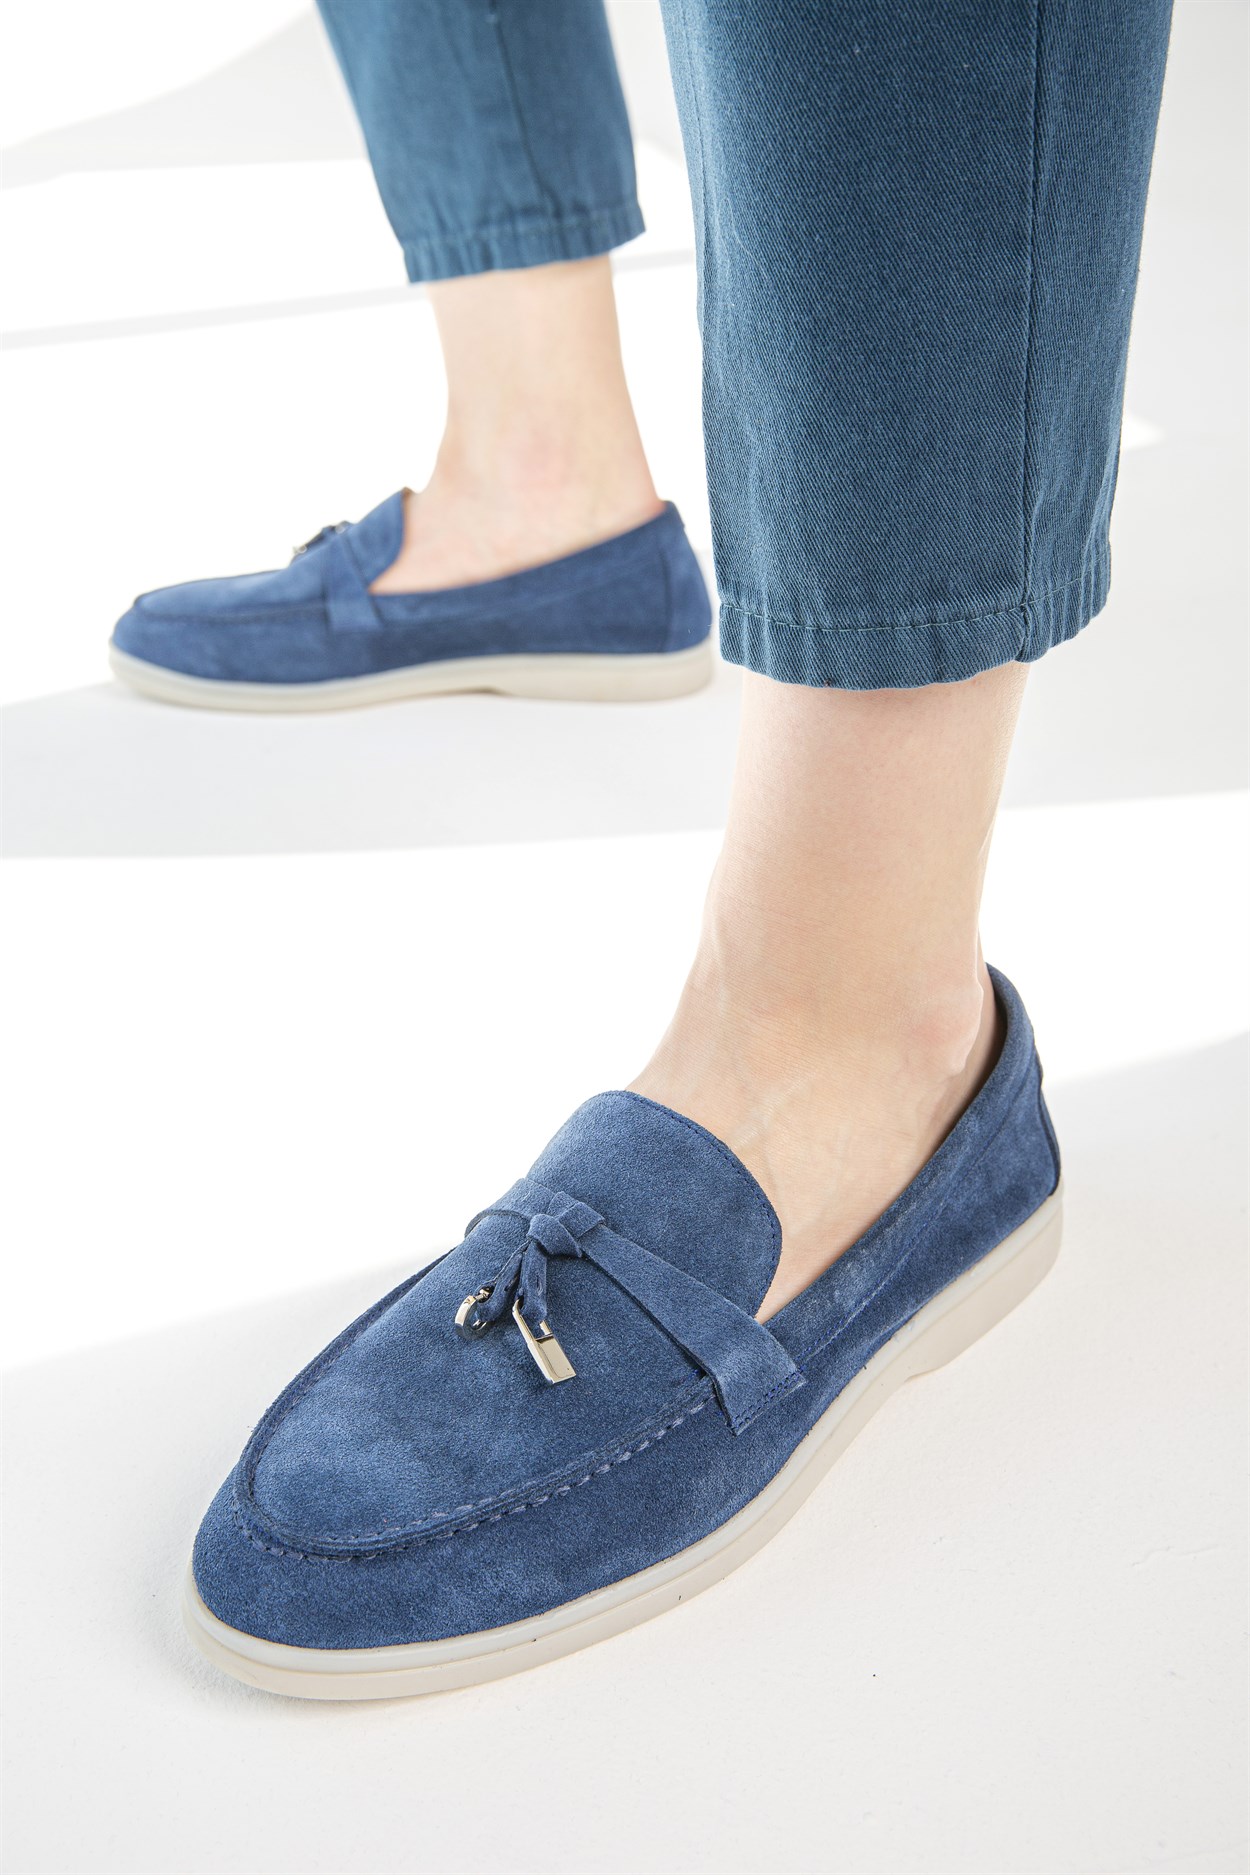 Mavi Süet Kadın Loafer Ayakkabı | Flower Ayakkabı